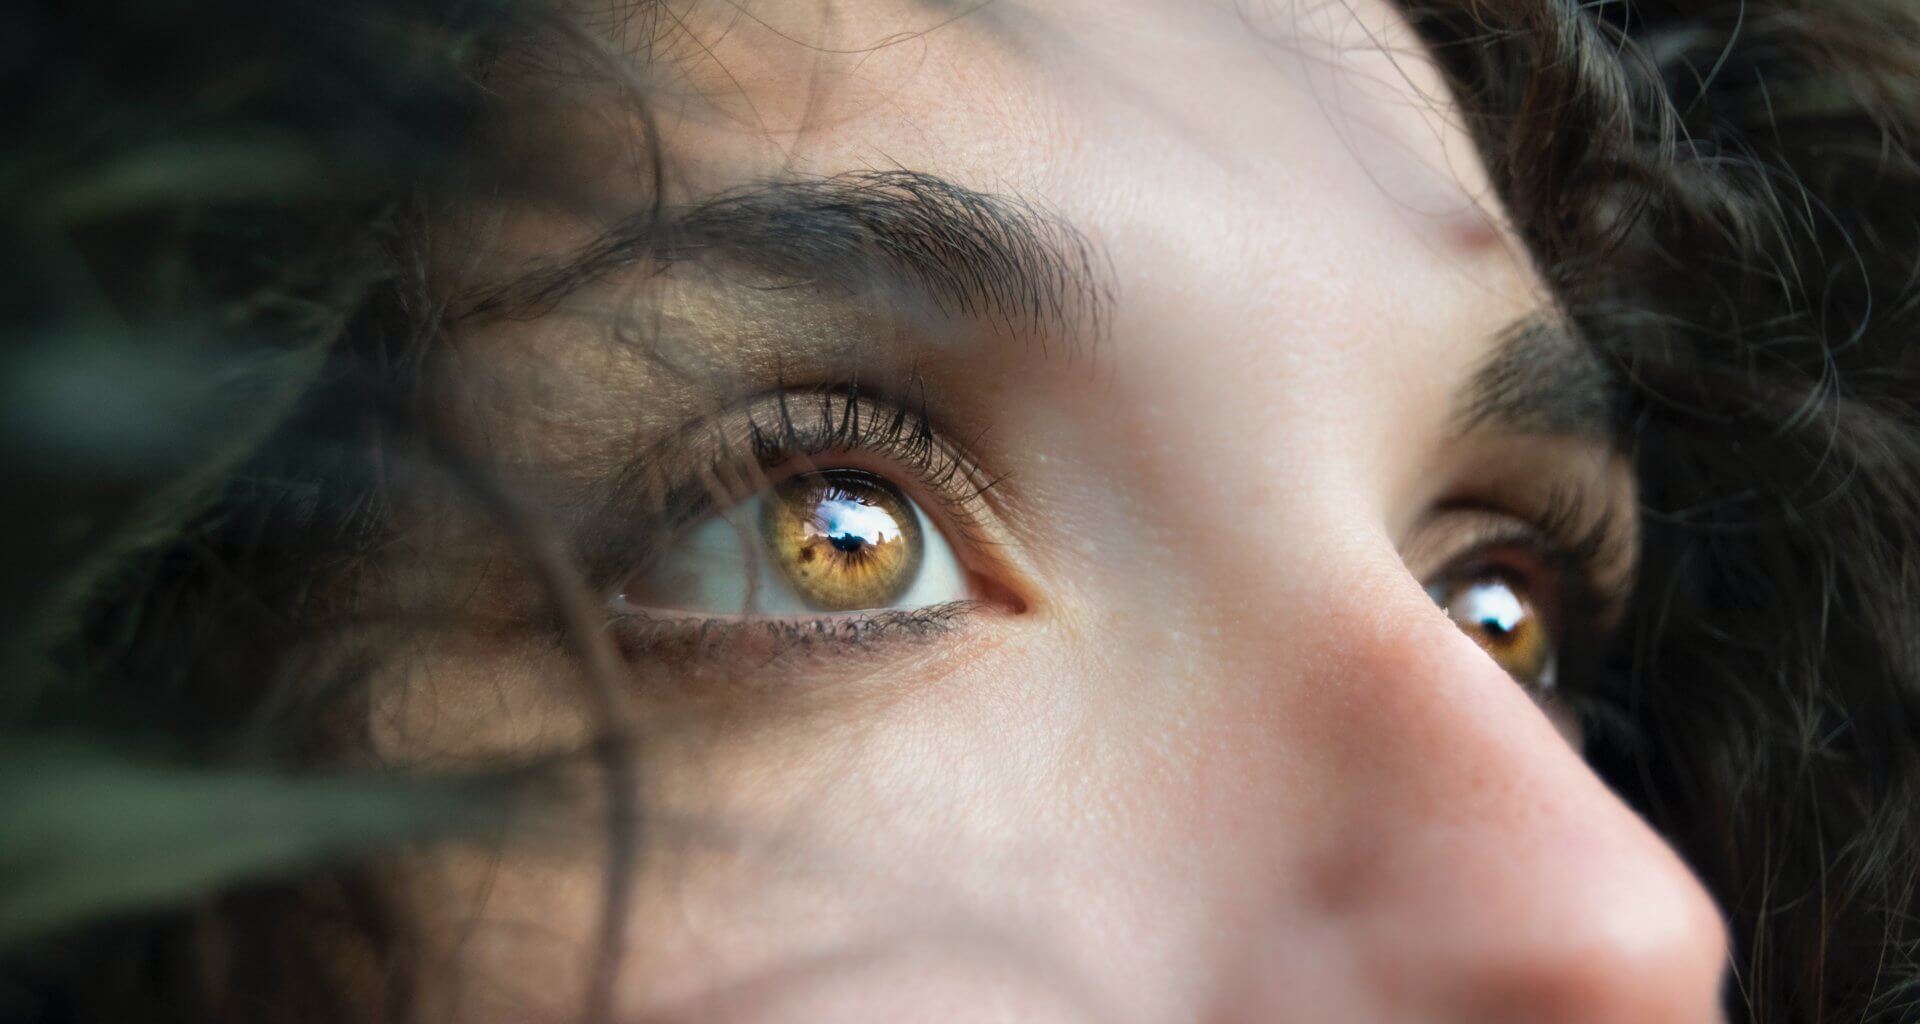 Sabías qué dependiendo de tu edad pudieras desarrollar ciertos padecimientos en los ojos